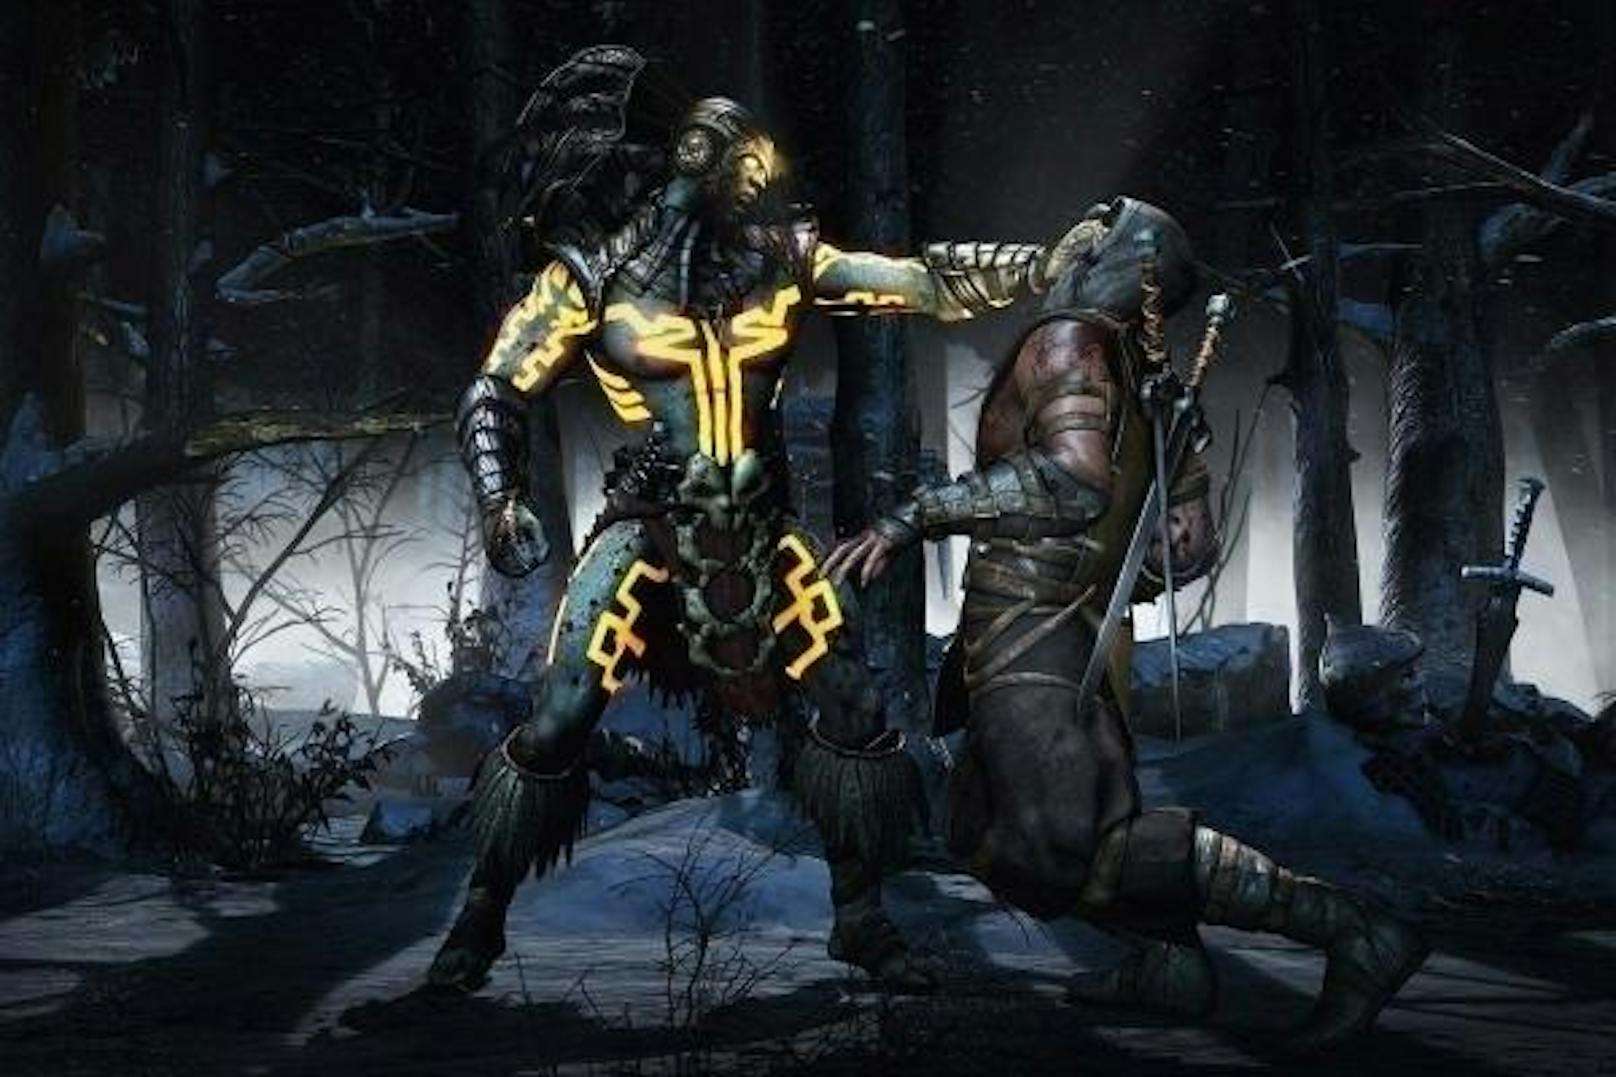 Leichter tödlich: Im Prügelspiel "Mortal Kombat X" lassen sich mit realem Geld leichter auszuführende "Fatalities" (besonders brutale Abschluss-Moves) kaufen.